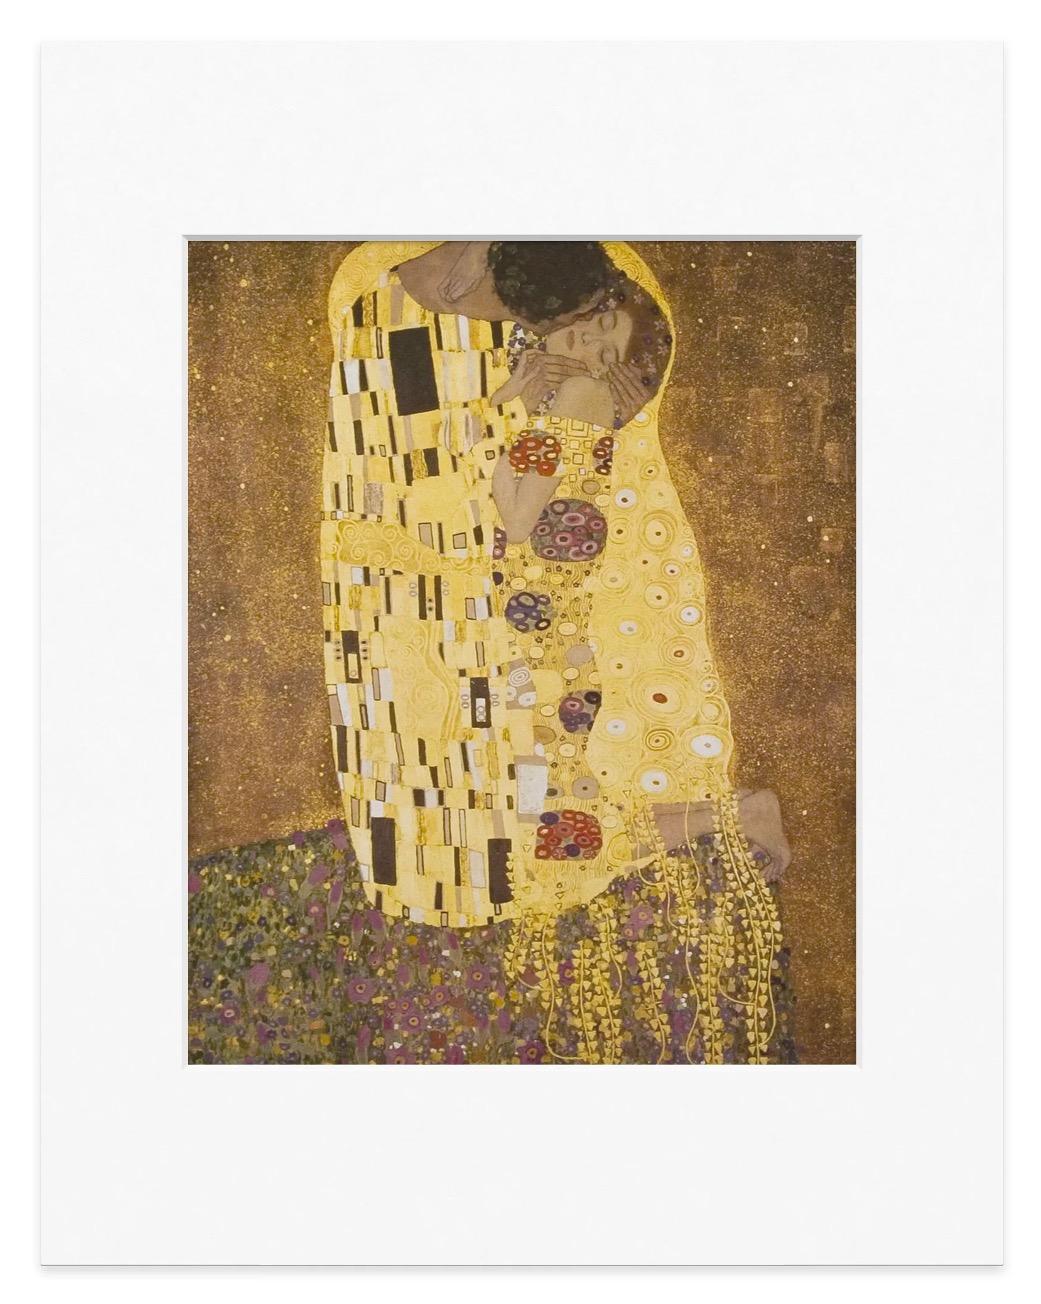 Dieser Druck zeigt eine Reproduktion des Gemäldes Der Kuss (1907) von Gustav Klimt.

Größe
14h x 11 "w

Material
Papier